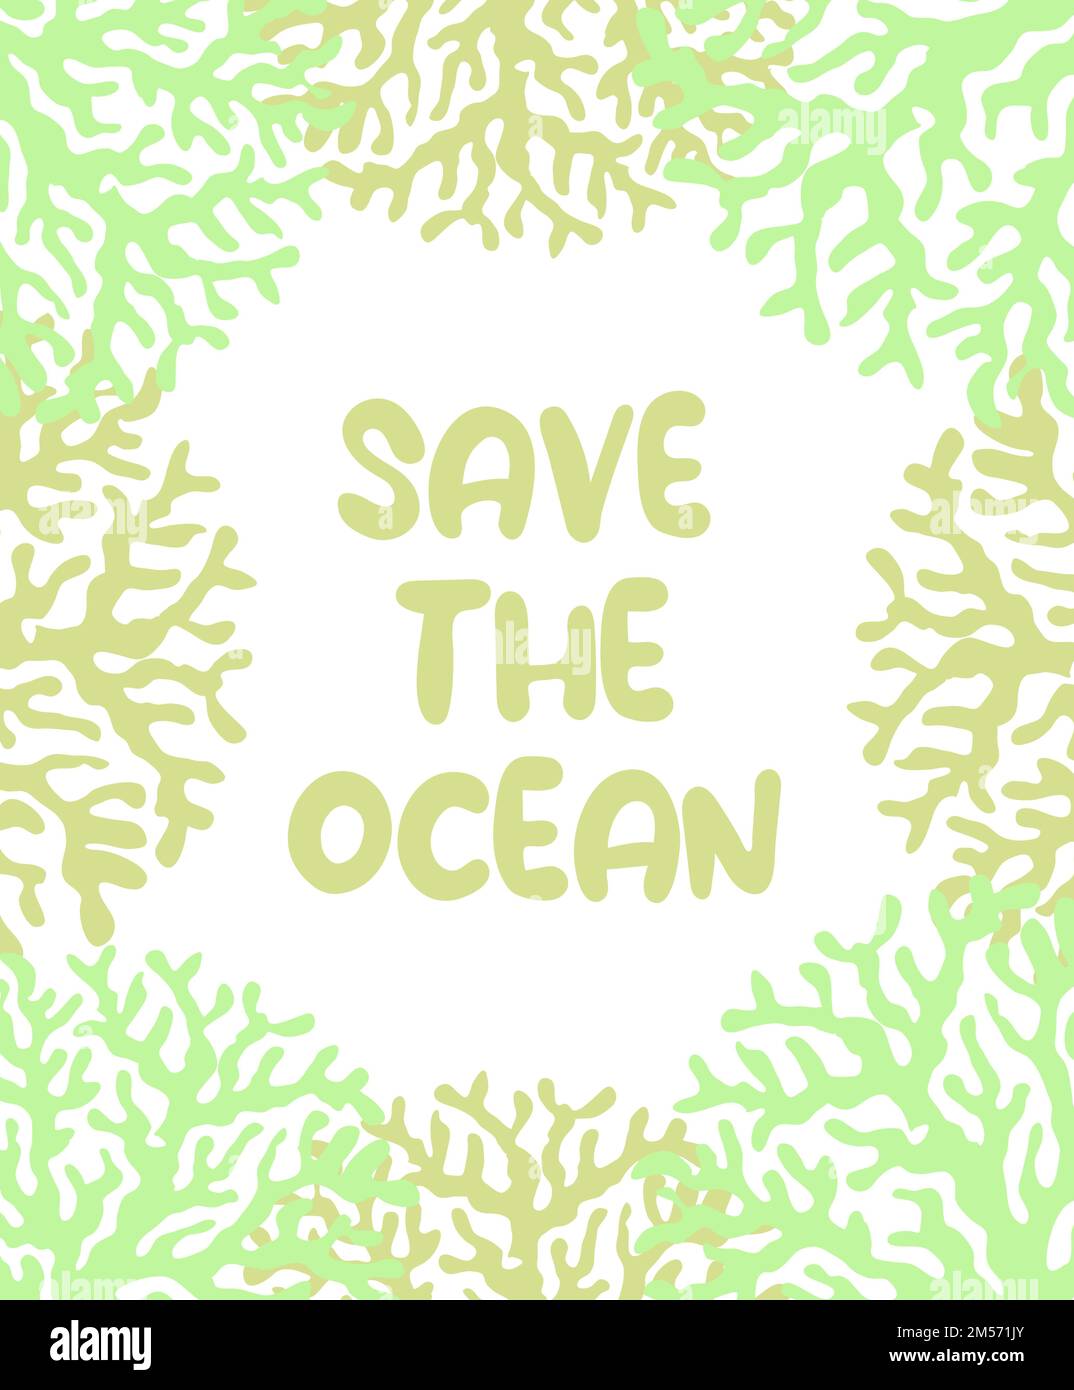 Vektor Ozean Illustration mit Korallen. Save the Ocean - Moderne Beschriftung. Unterwassertiere. Ökologisches Design für Banner, Flyer, Postkarte, Website Stock Vektor